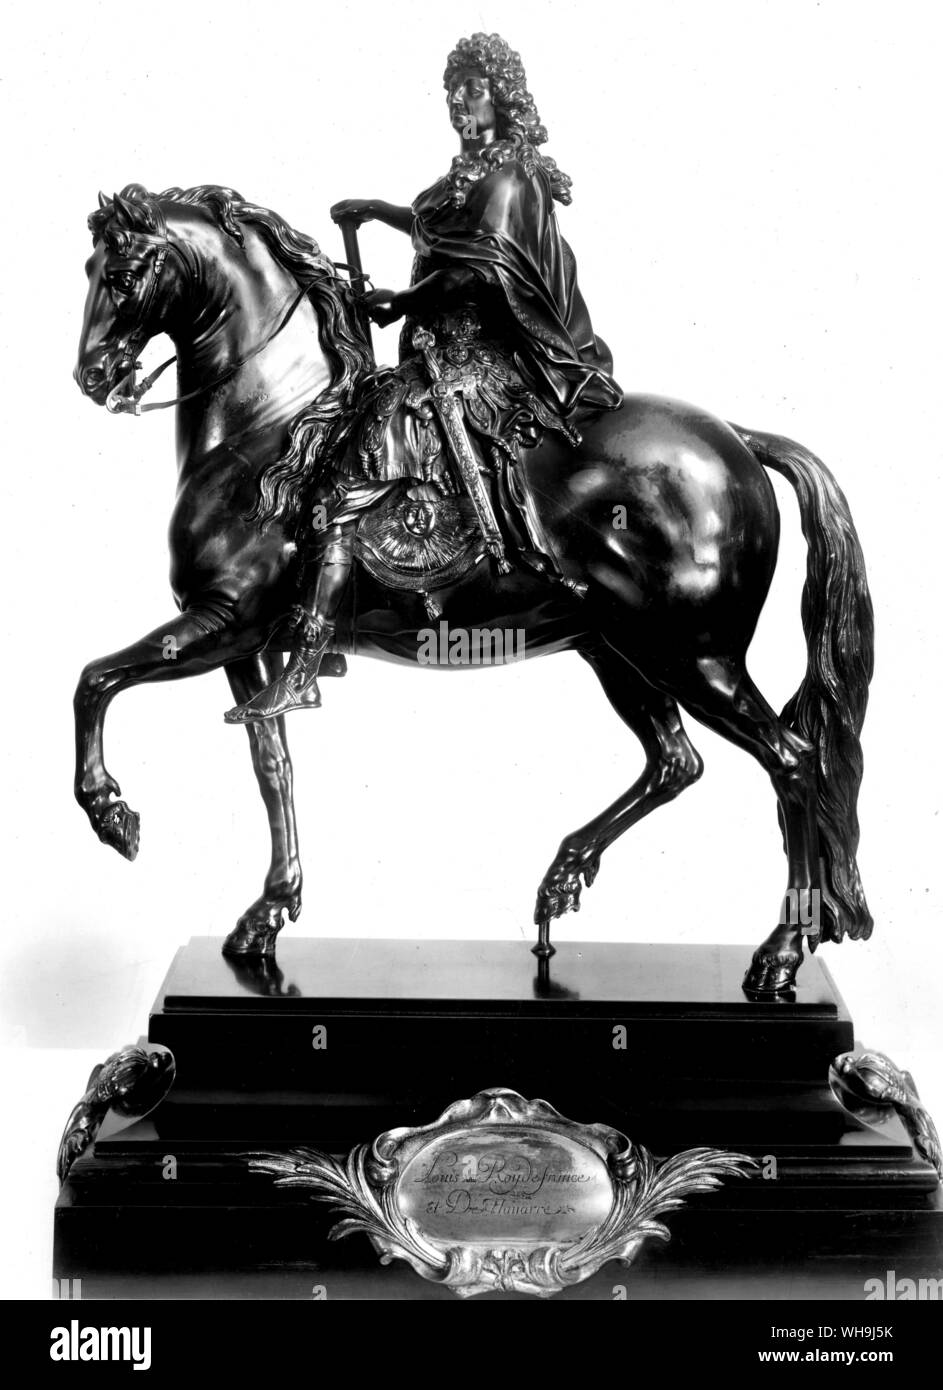 Statua di Luigi XIV a cavallo (1638-1715, re di Francia dal 1643), il Re Sole. Foto Stock